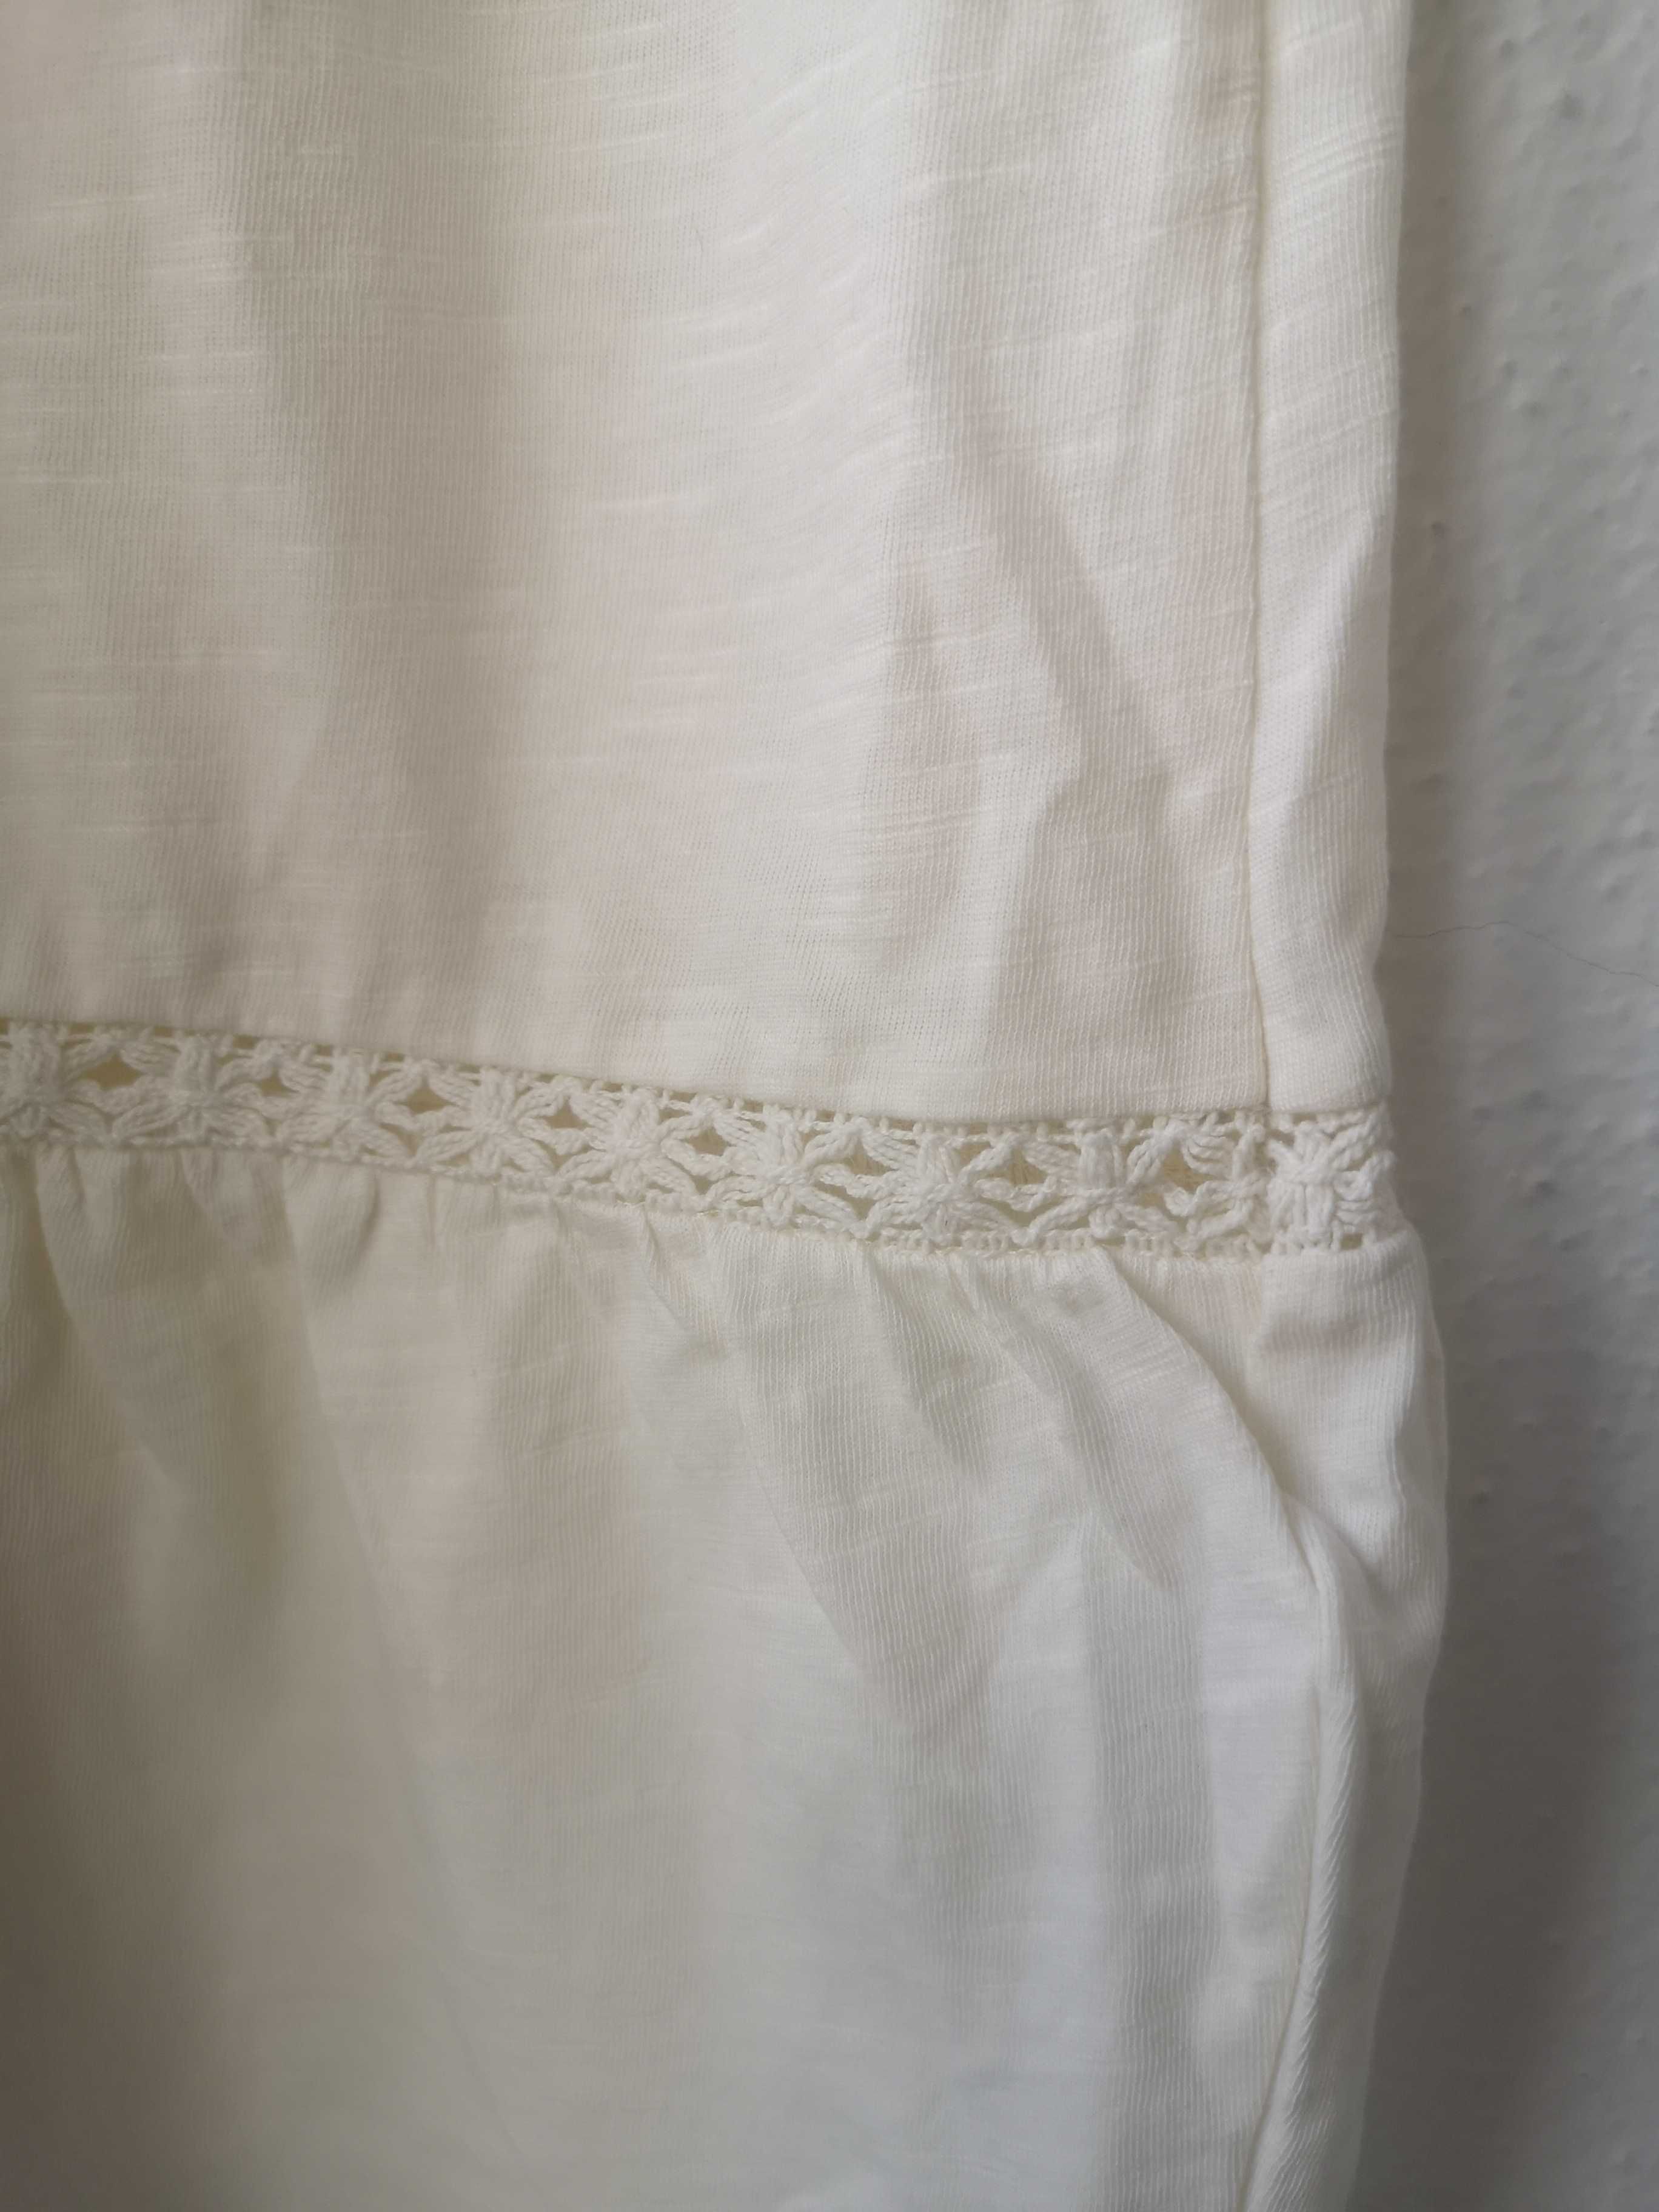 Vestido branco em algodão da women'secret, tamanho M